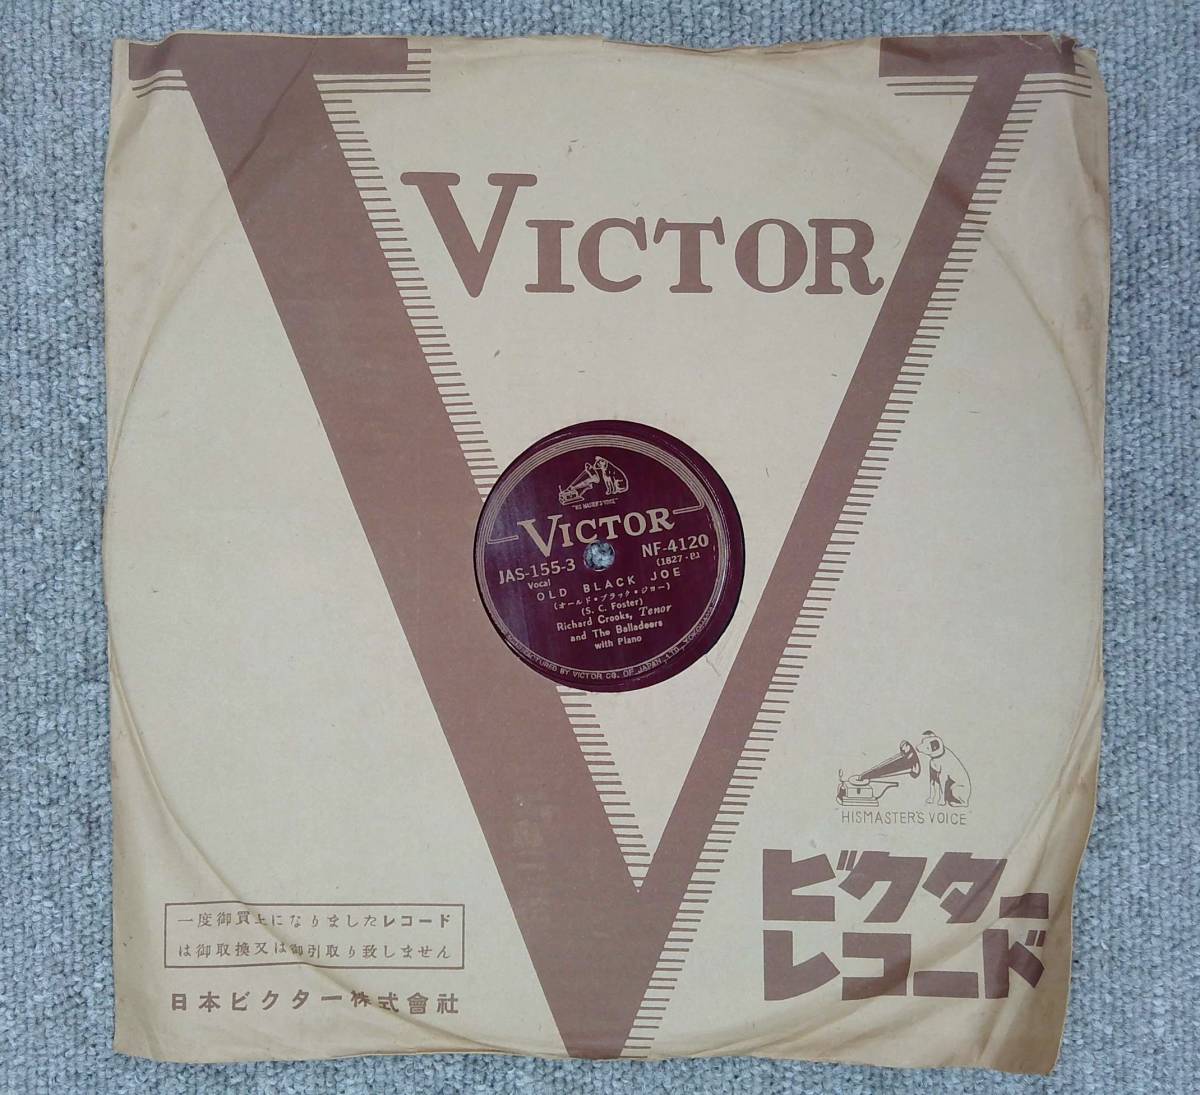 SP盤レコード Richard Crocks / 金髪のジェニー / OLD BLACK JOE Vocal NF-4120 ビクター ny30の画像5